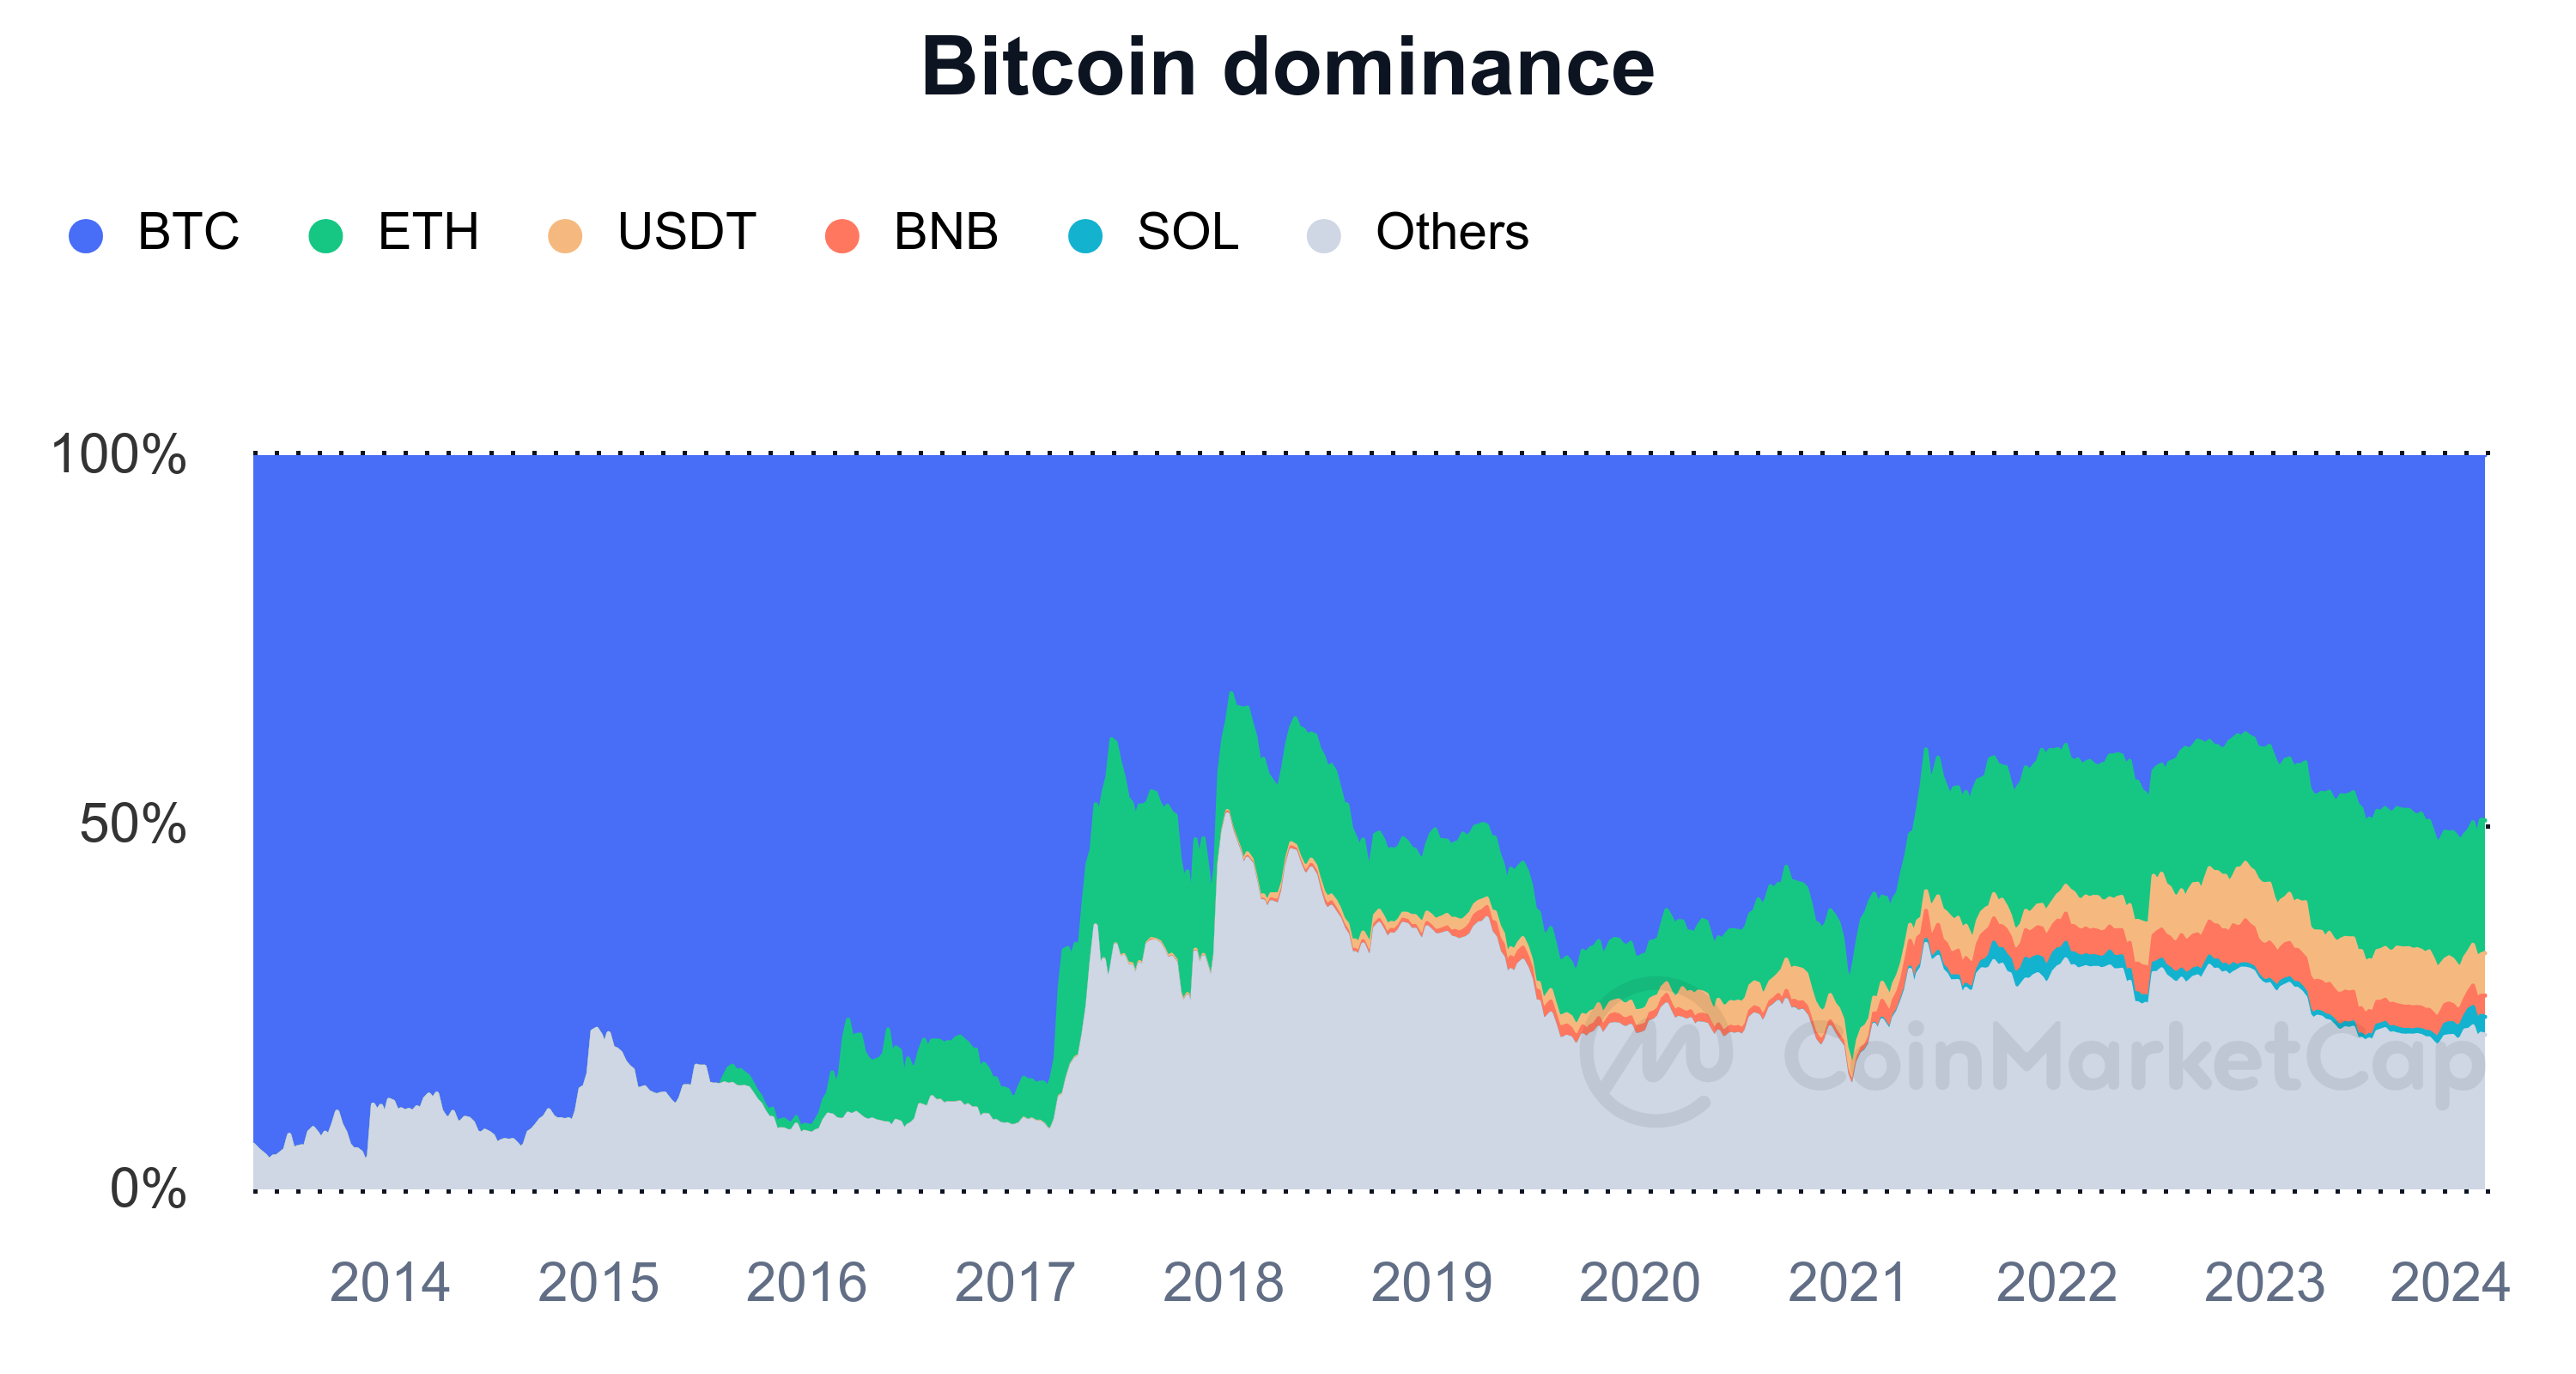 Bitcoin dominance chart showing altseason